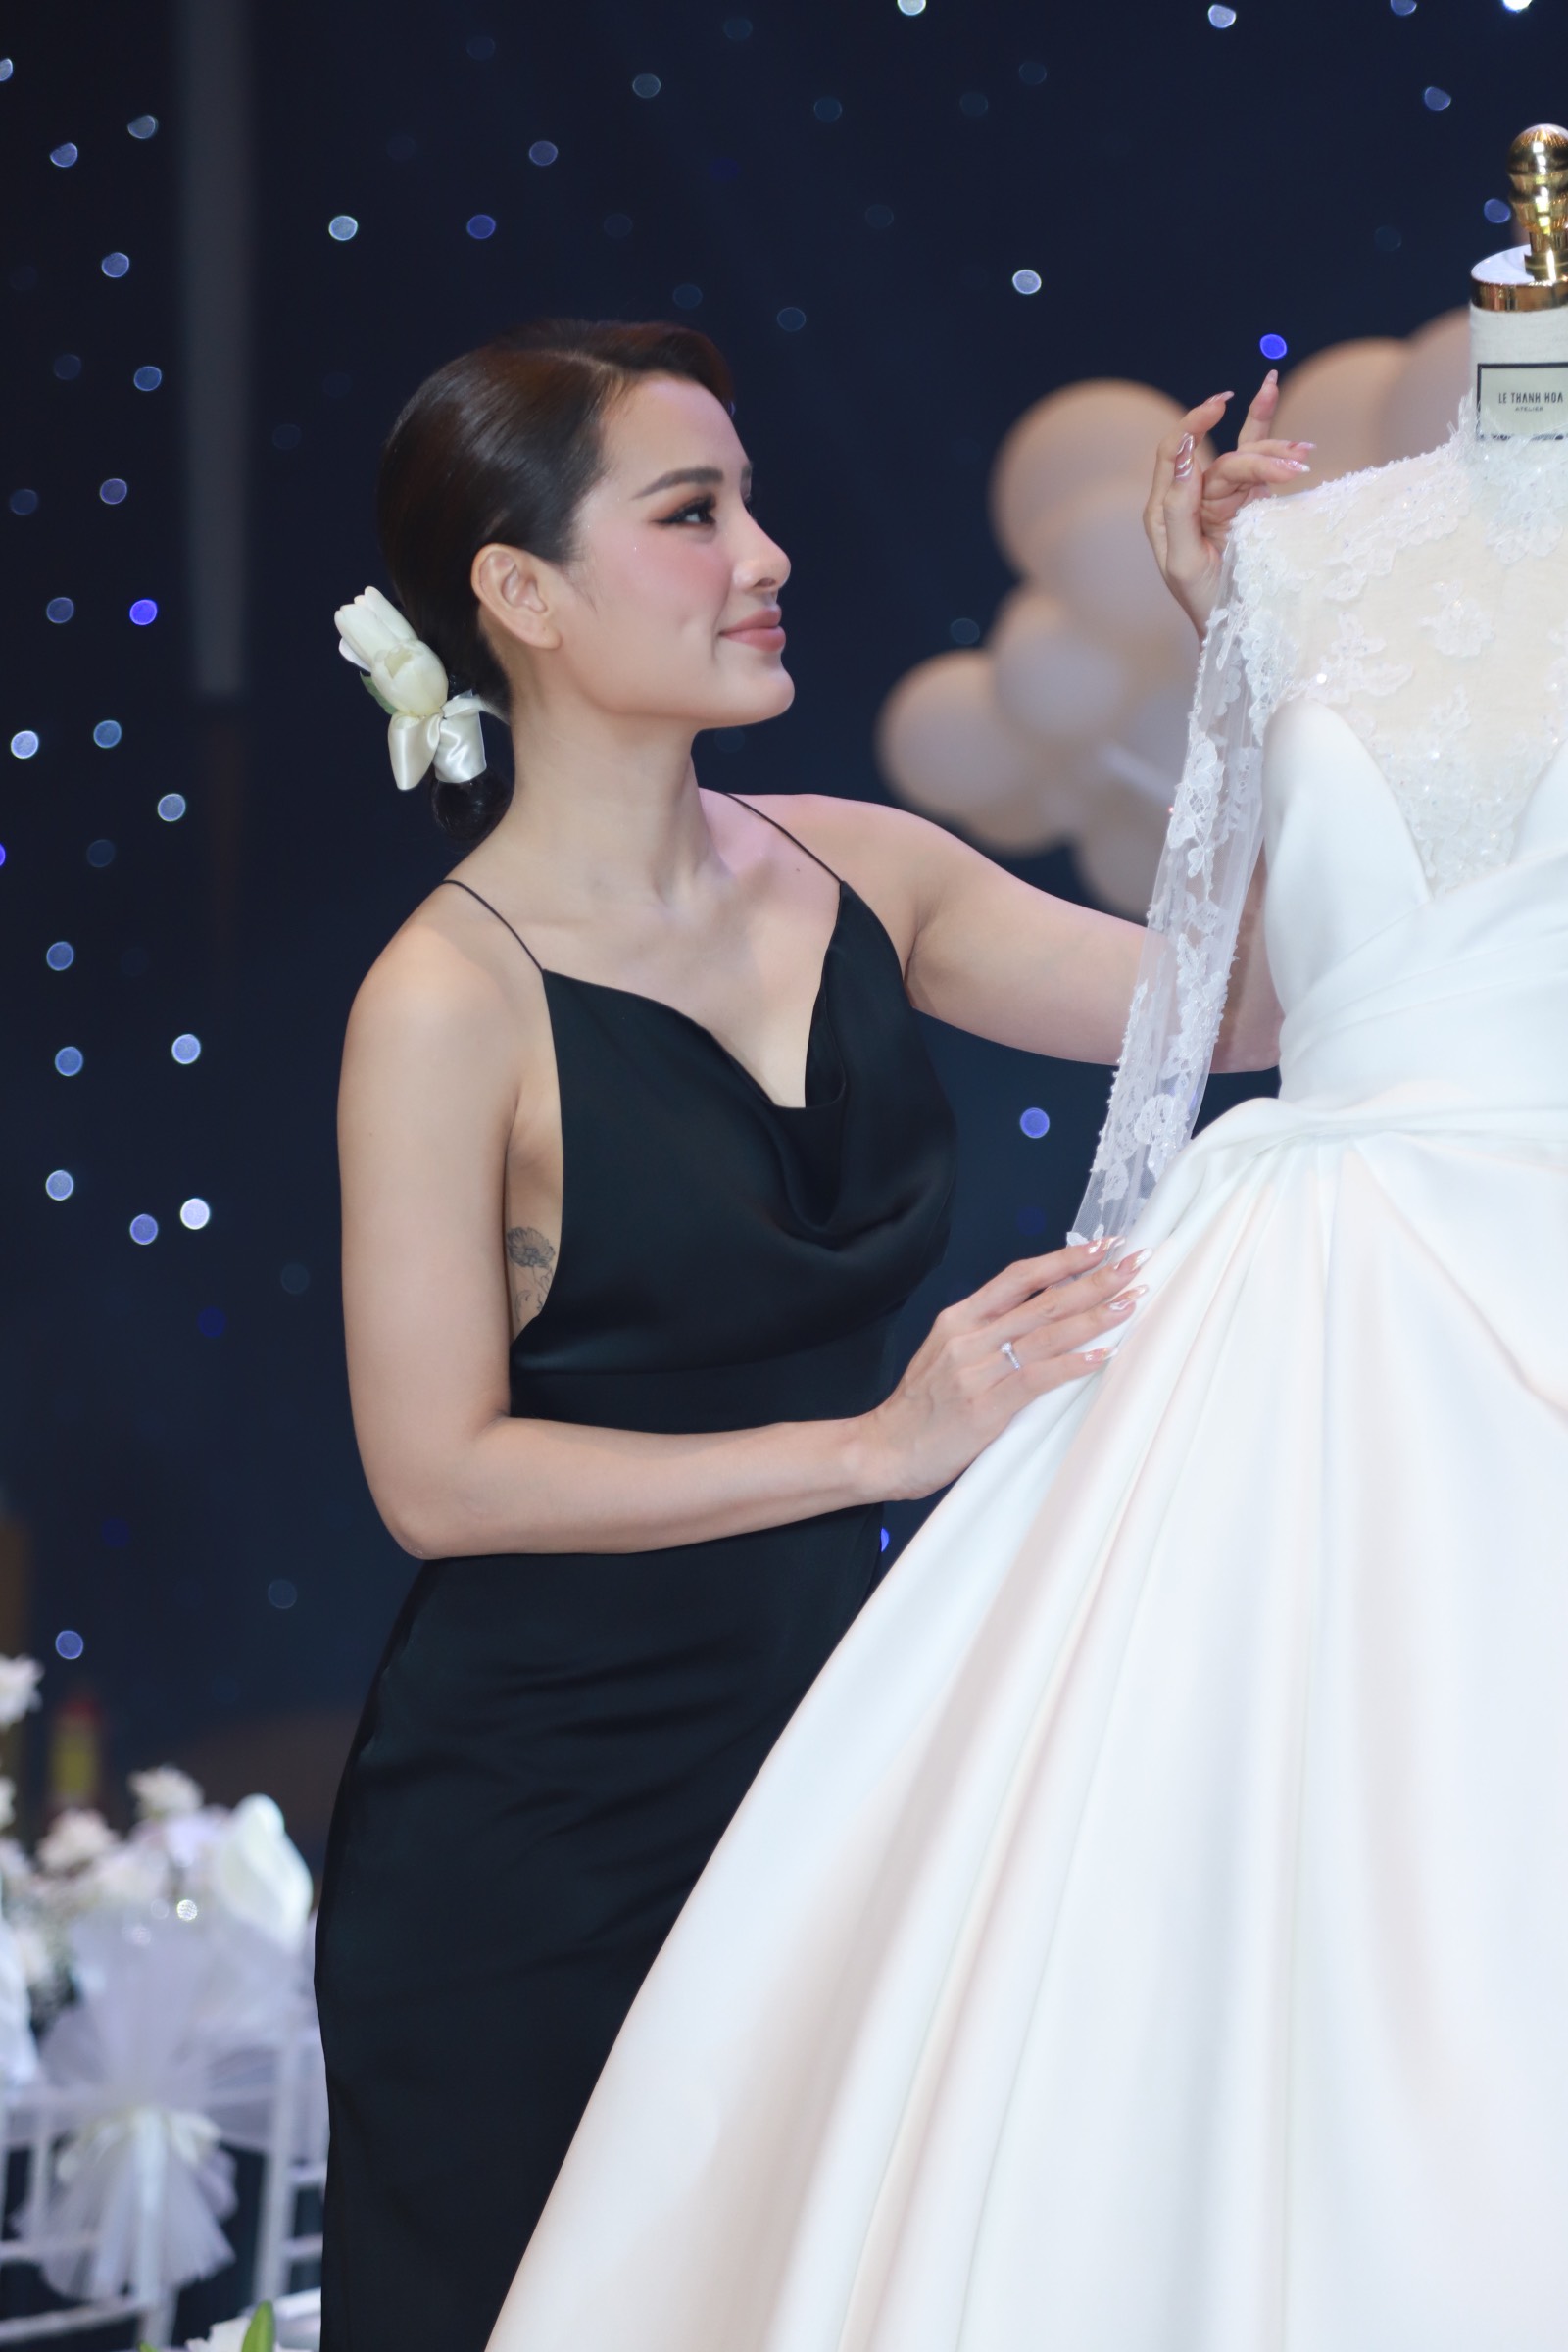 Ngắm trọn 3 chiếc váy cưới của Phương Trinh Jolie trong ngày trọng đại, gây choáng nhất là màn khoe vòng 1 táo bạo - Ảnh 5.